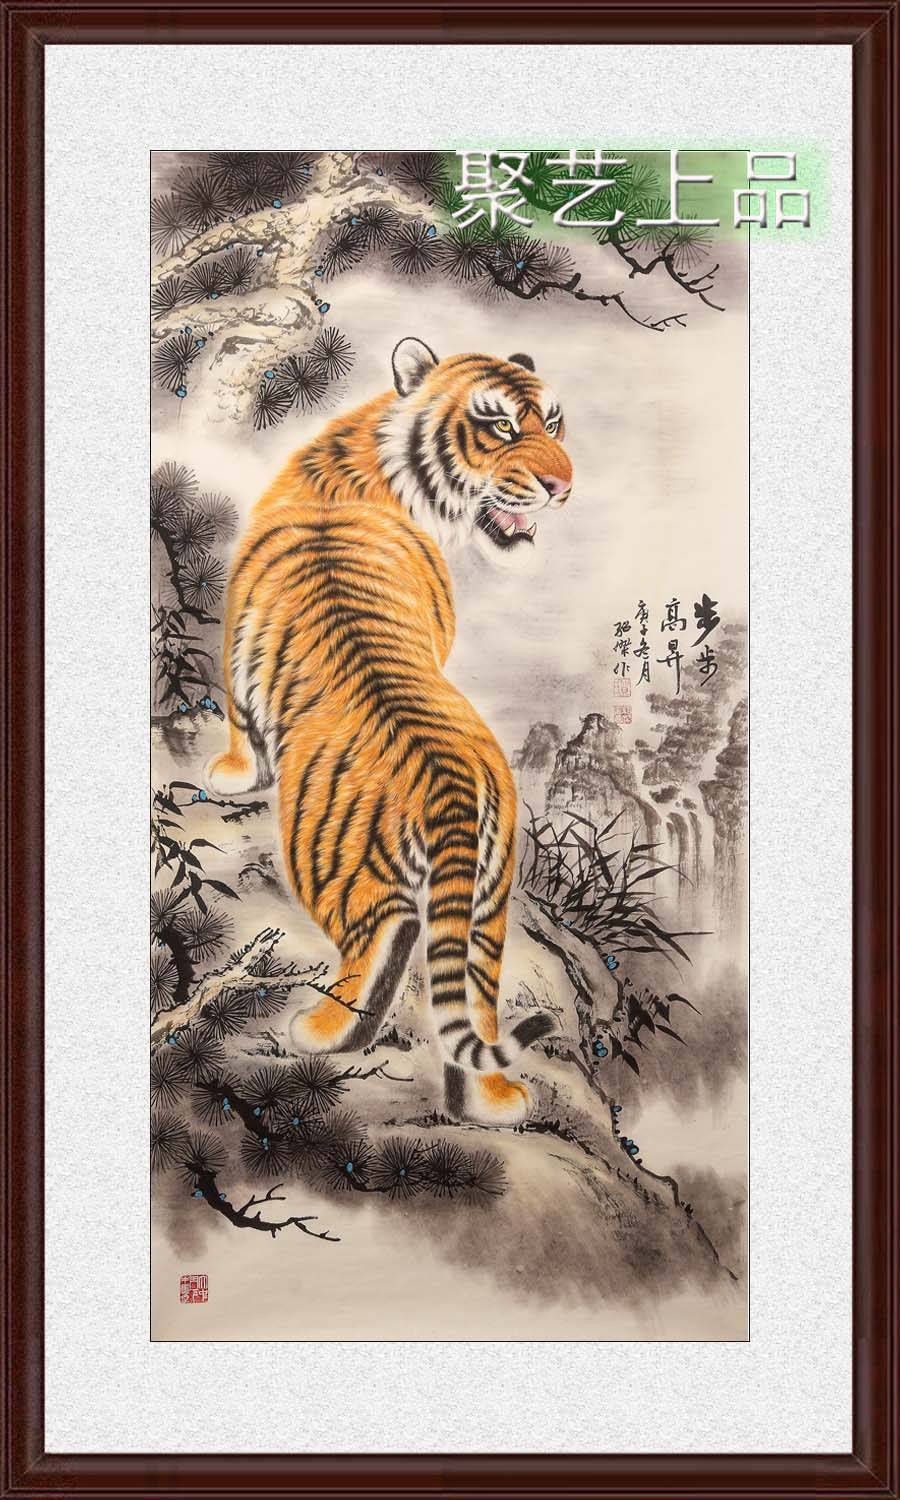 画老虎的画家贺绍杰 老虎画代表的精神